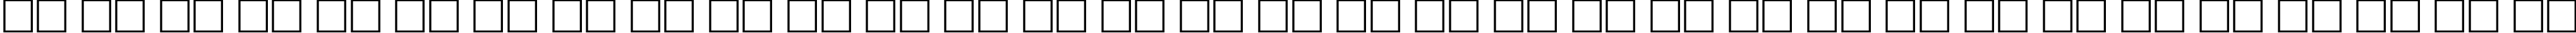 Пример написания русского алфавита шрифтом Emboss-Normal